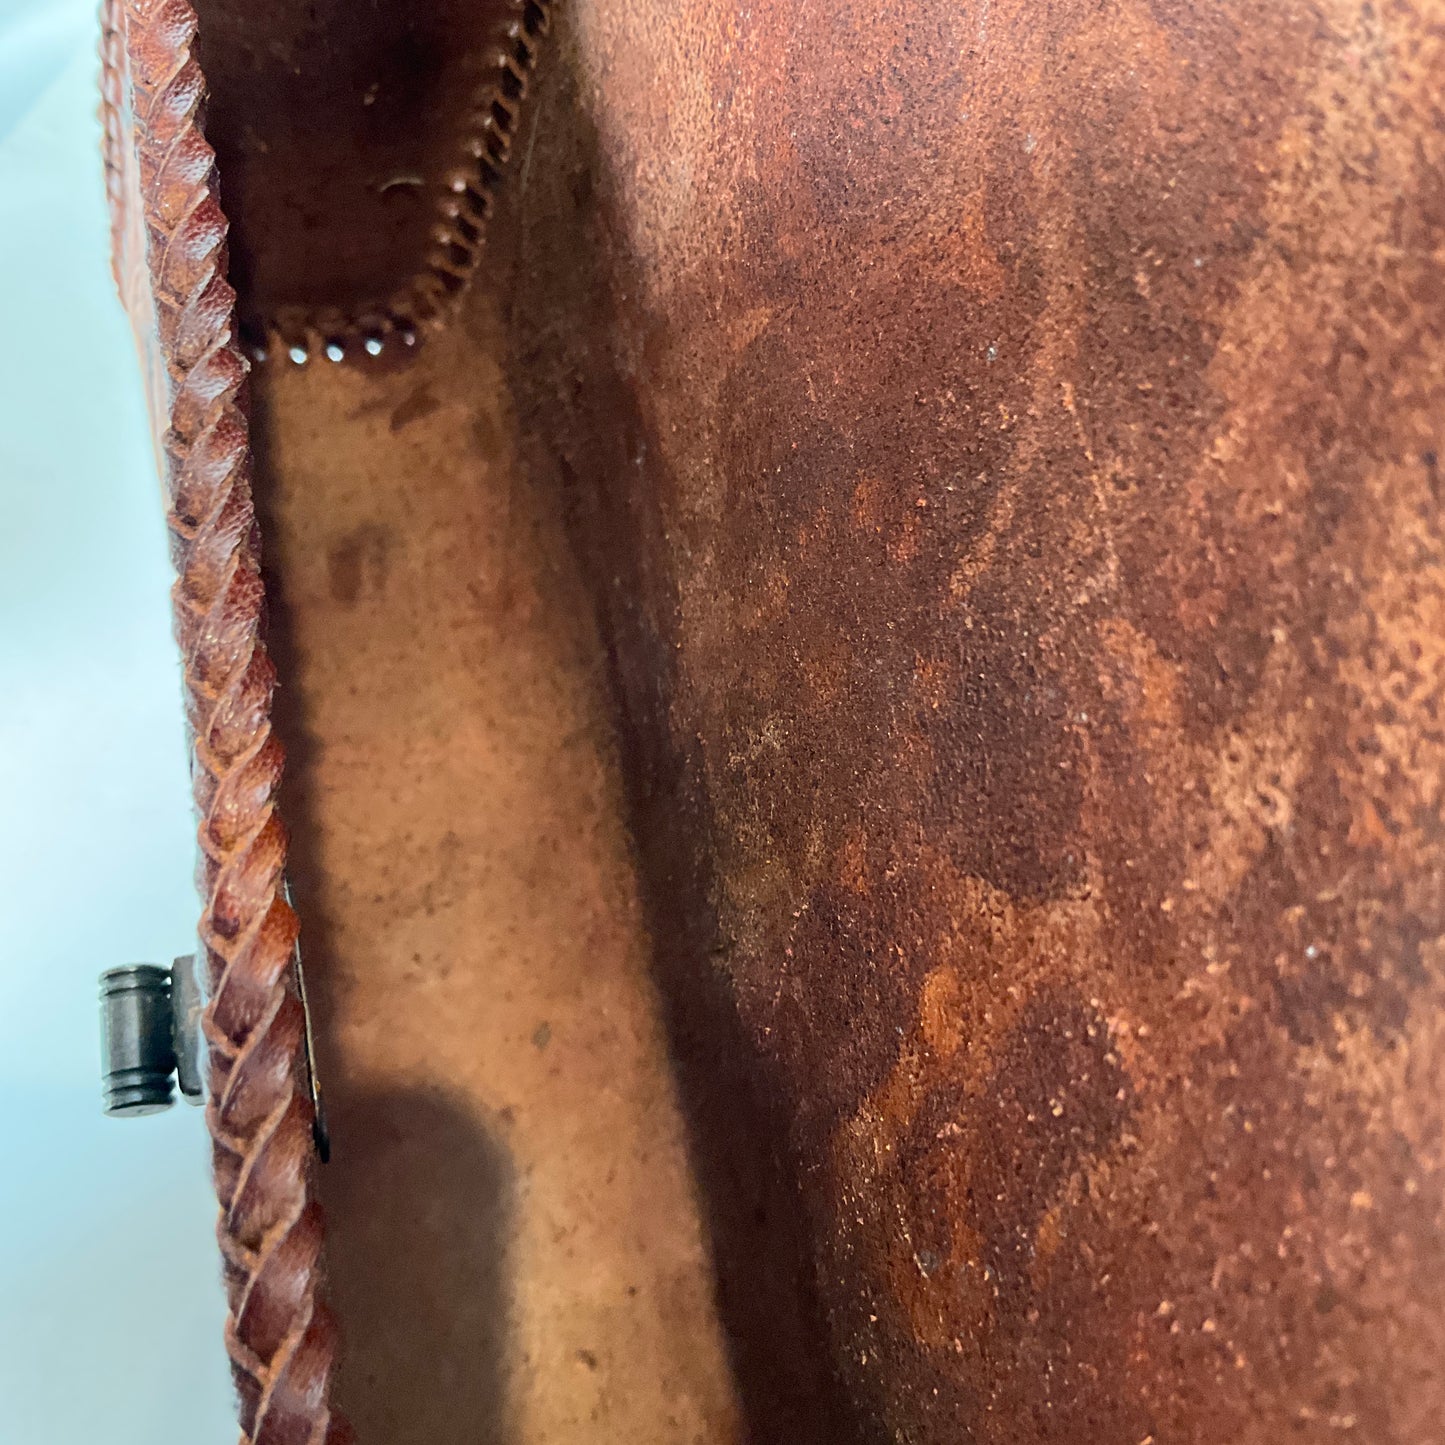 Vintage Hand Tooled Leather Purse